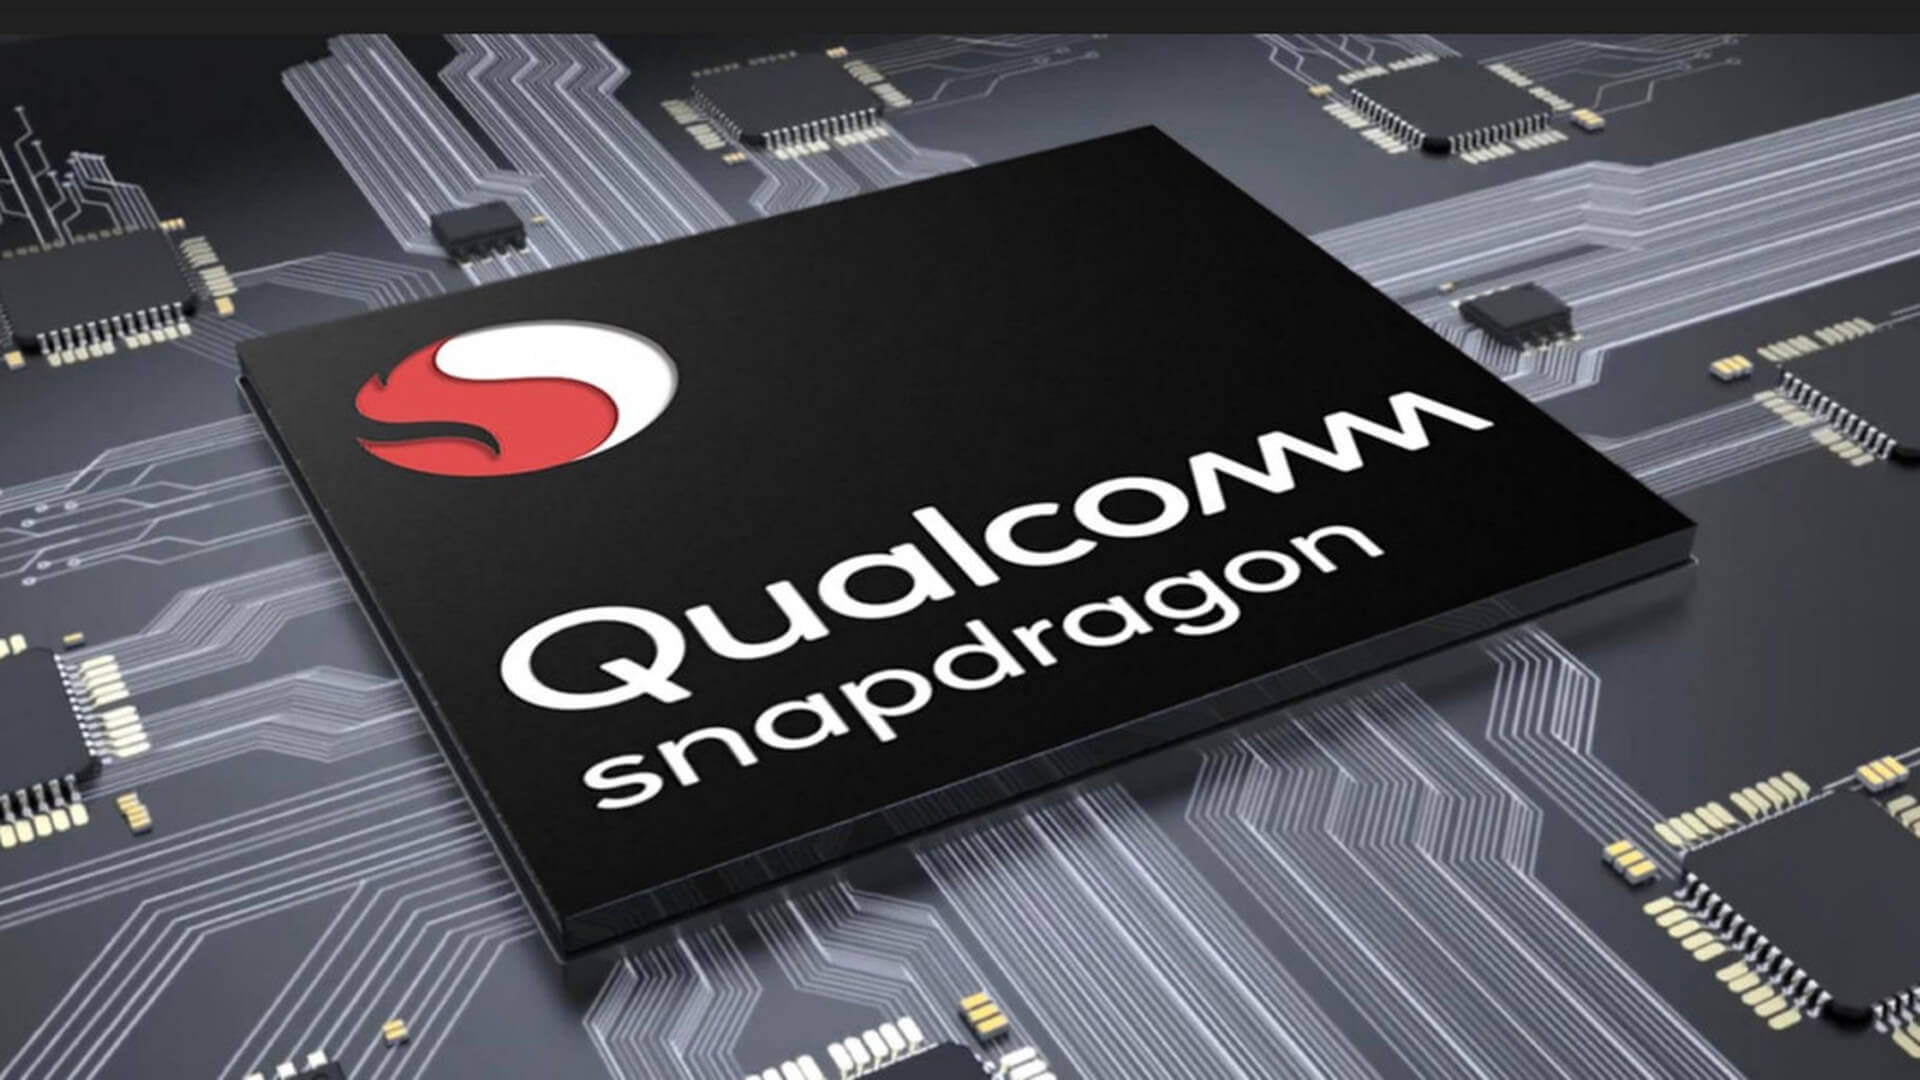 Qualcomm анонсирует дешевый чип с поддержкой 5G